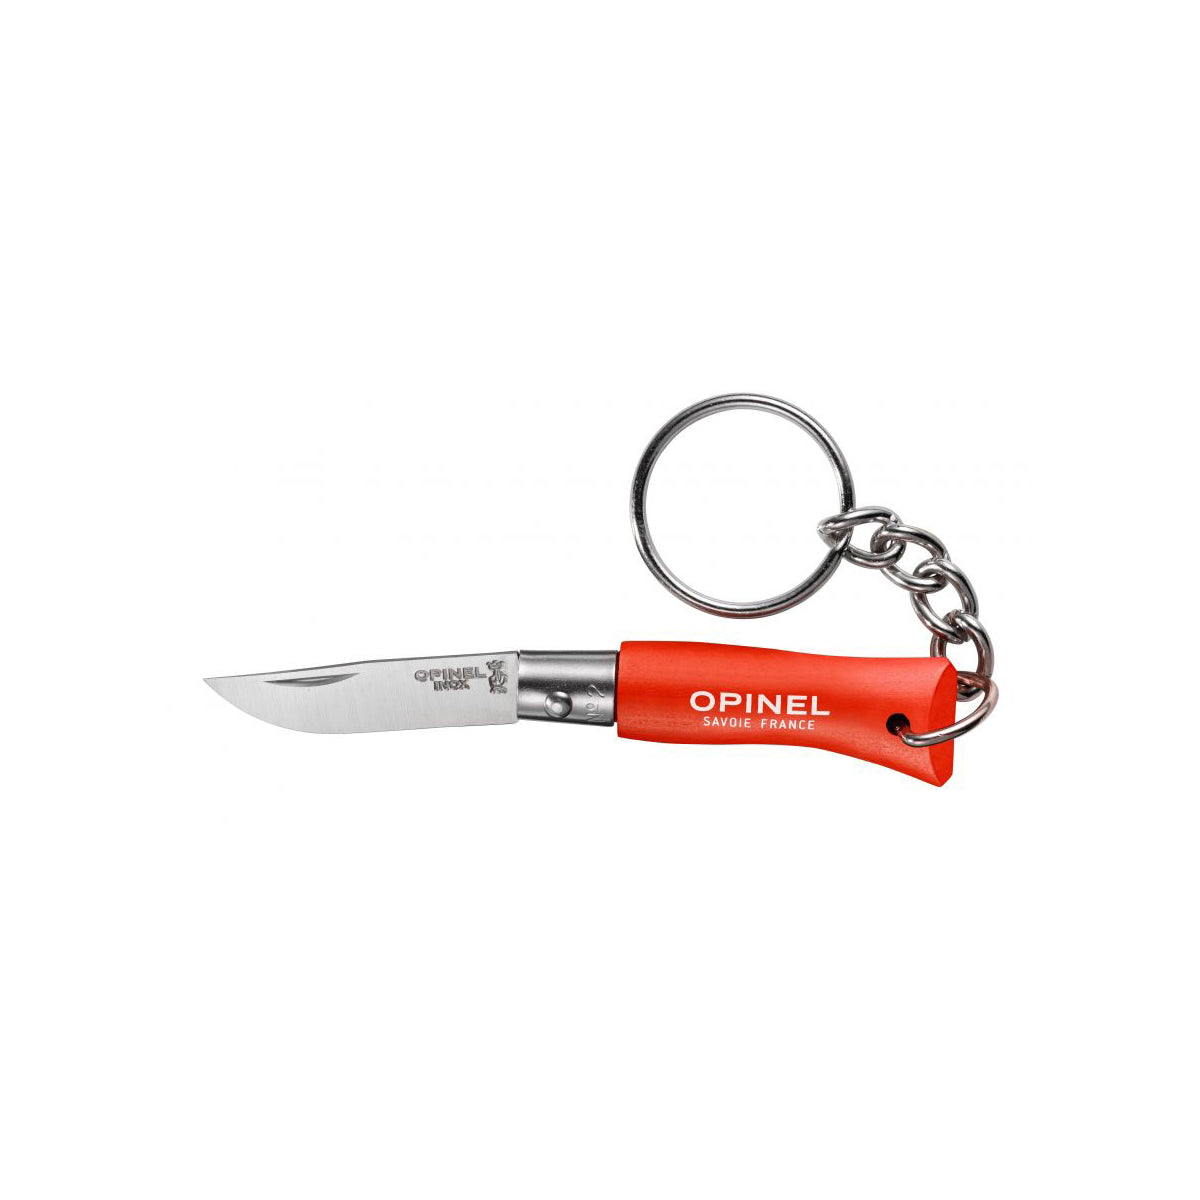 Porte-clés mini couteaux nº2 - Opinel